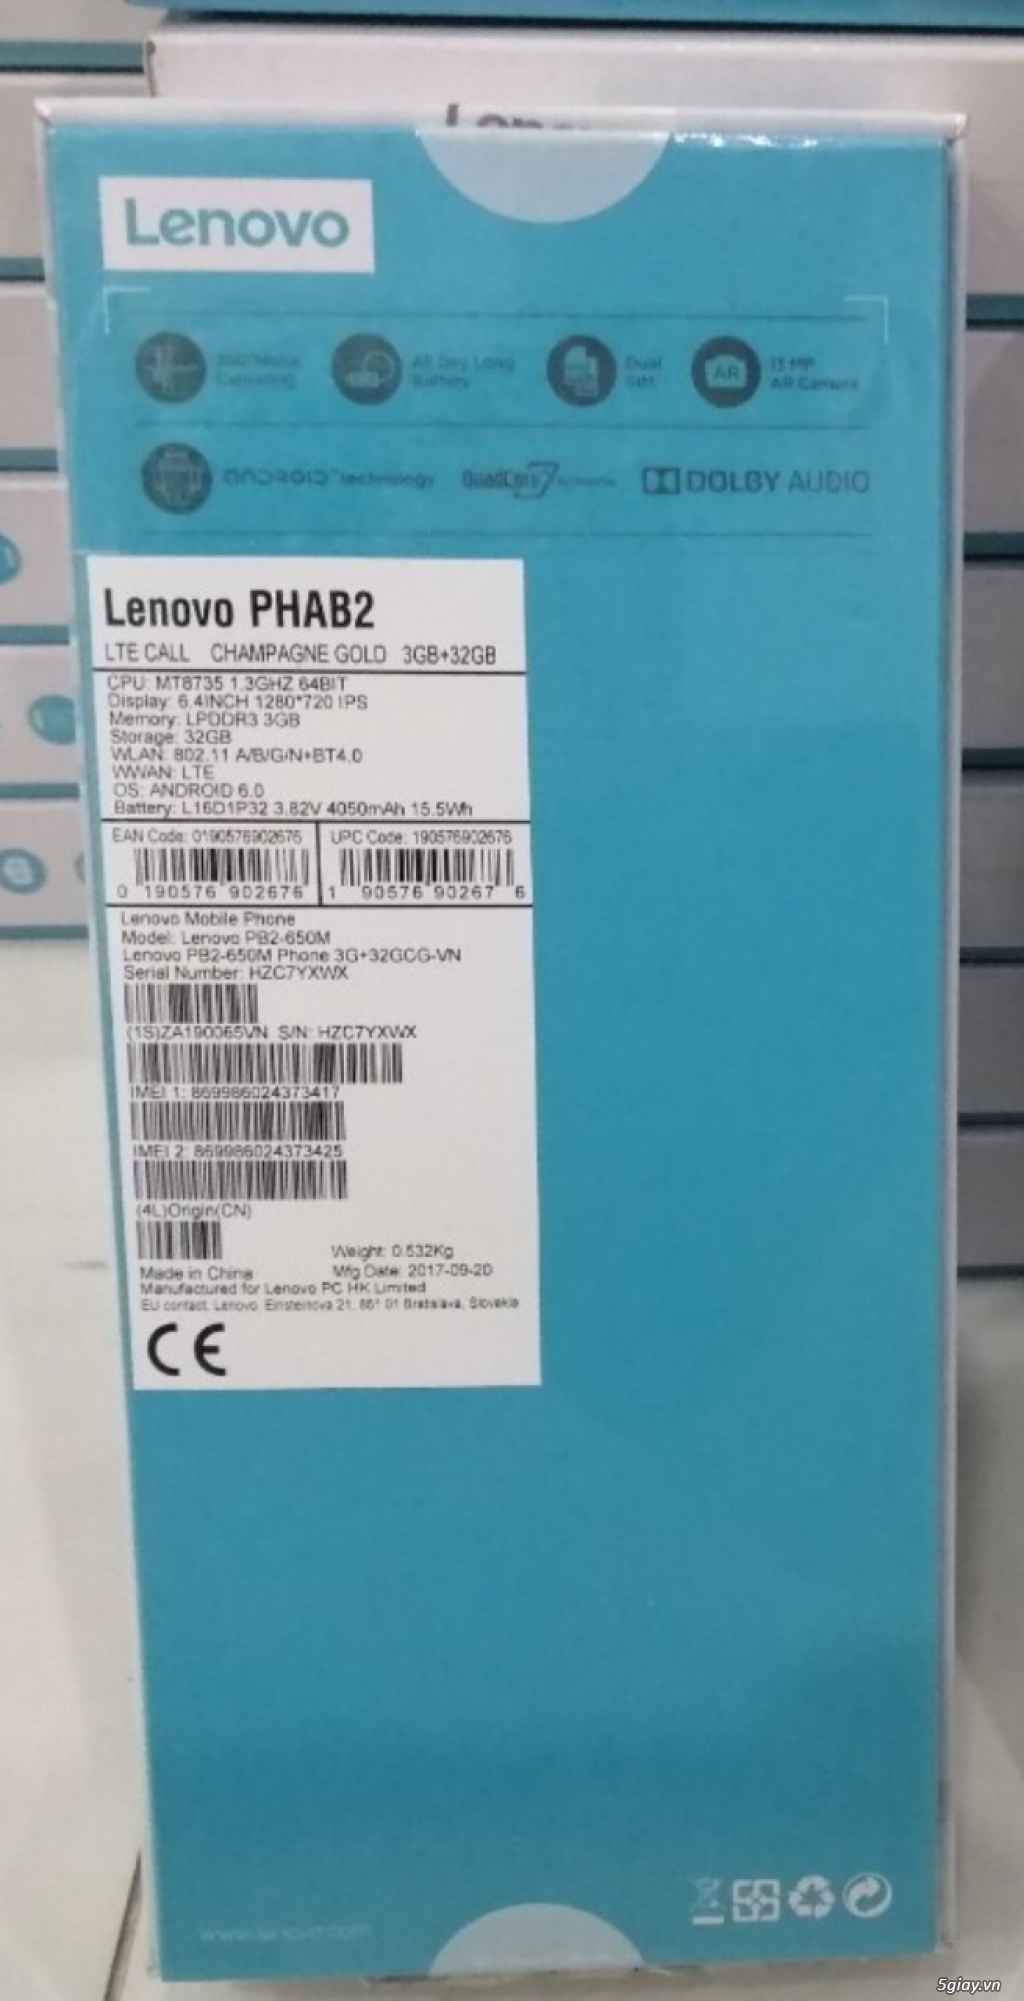 Lenovo phab 2 new 100% nguyên seal box. End 22h59p - 27.12.2019 - 1